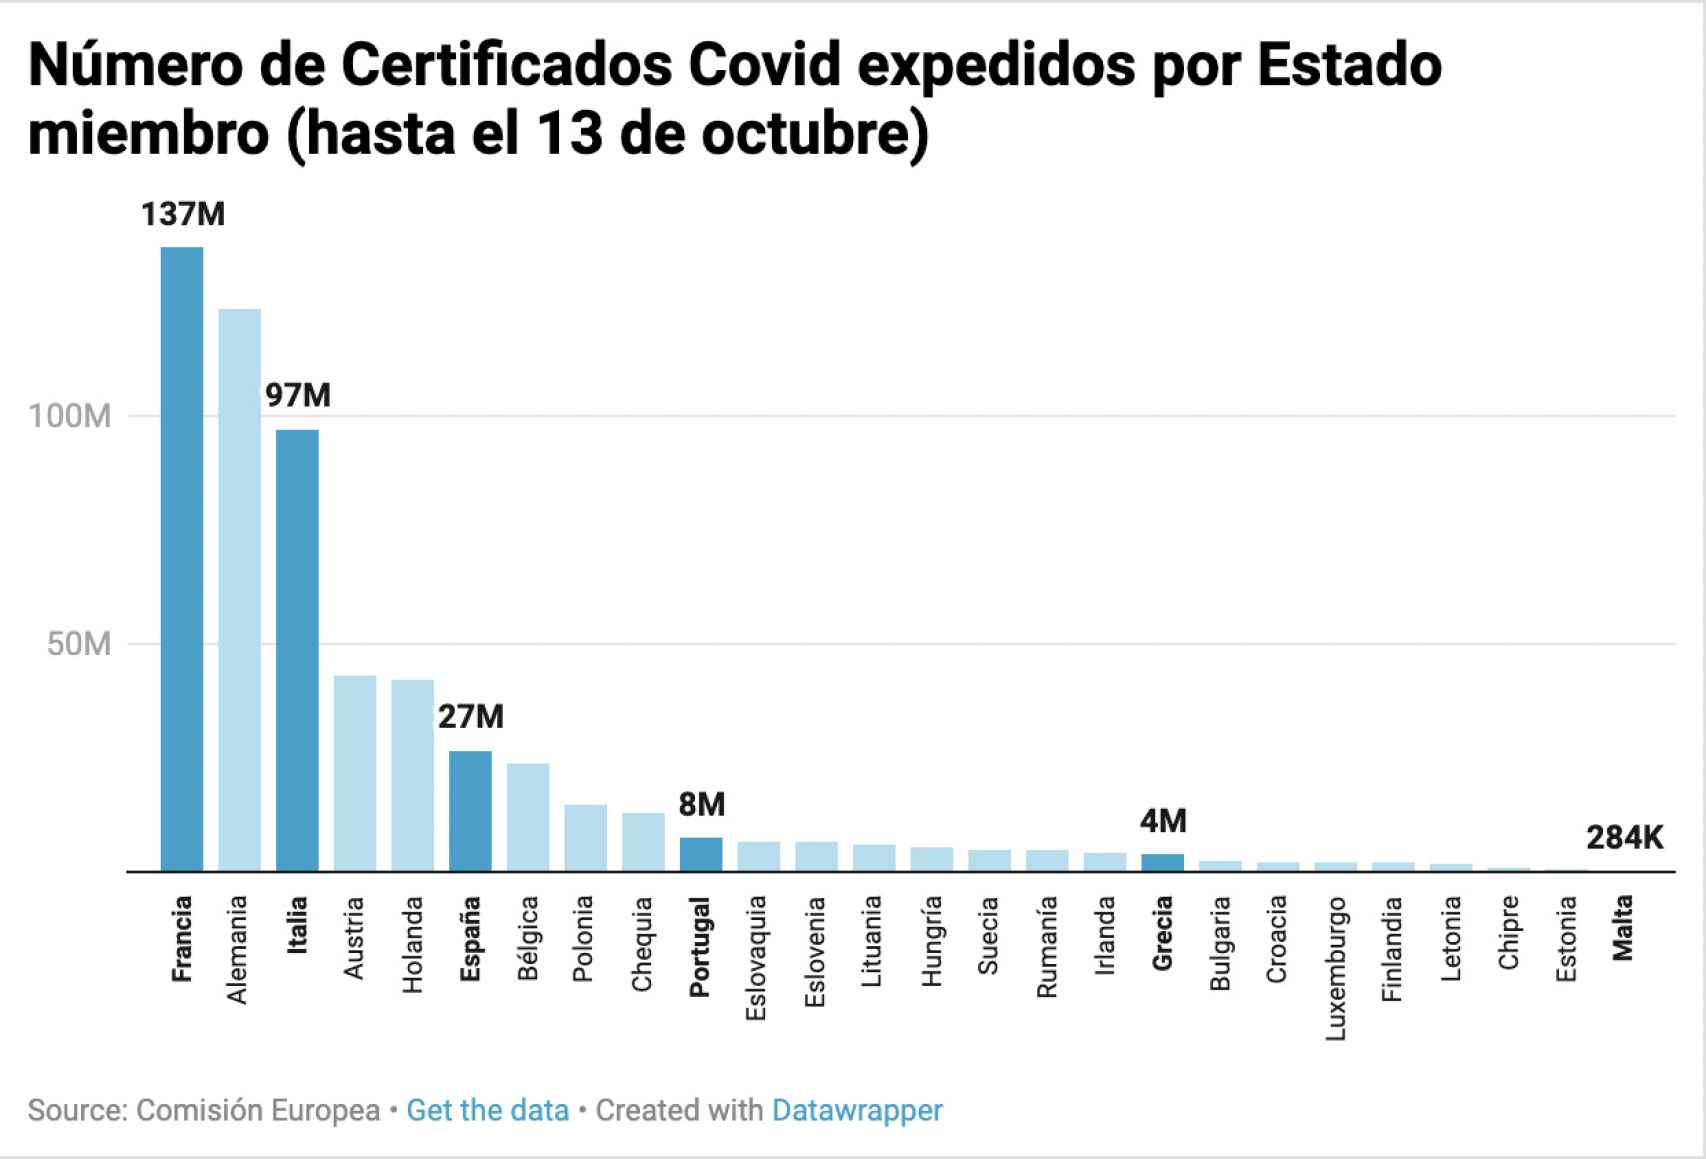 Número de Certificados Covid expedidos en cada Estado miembro